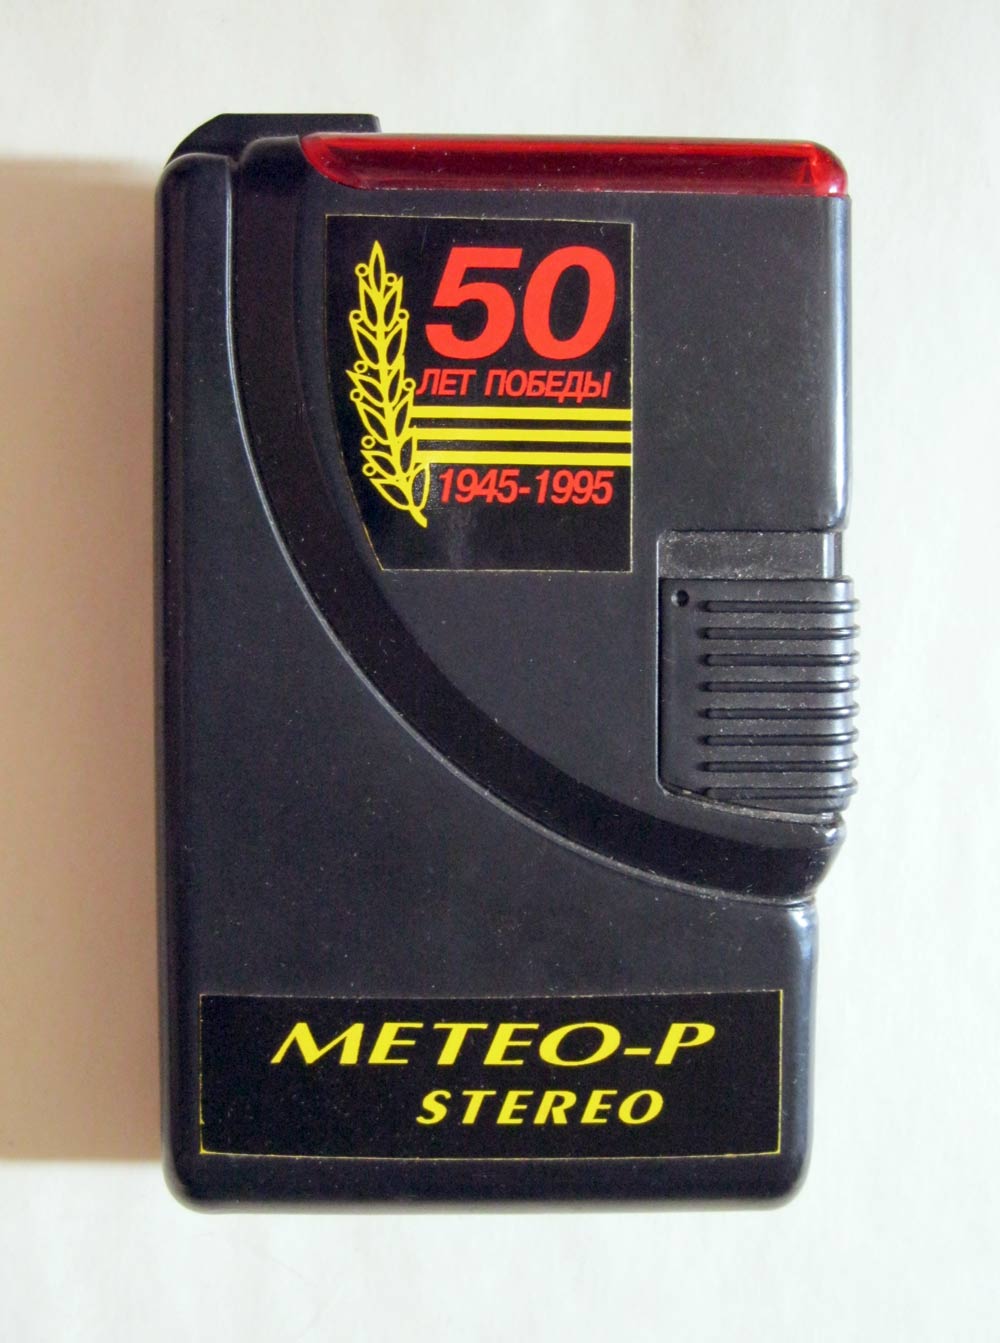 Метео-Р стерео